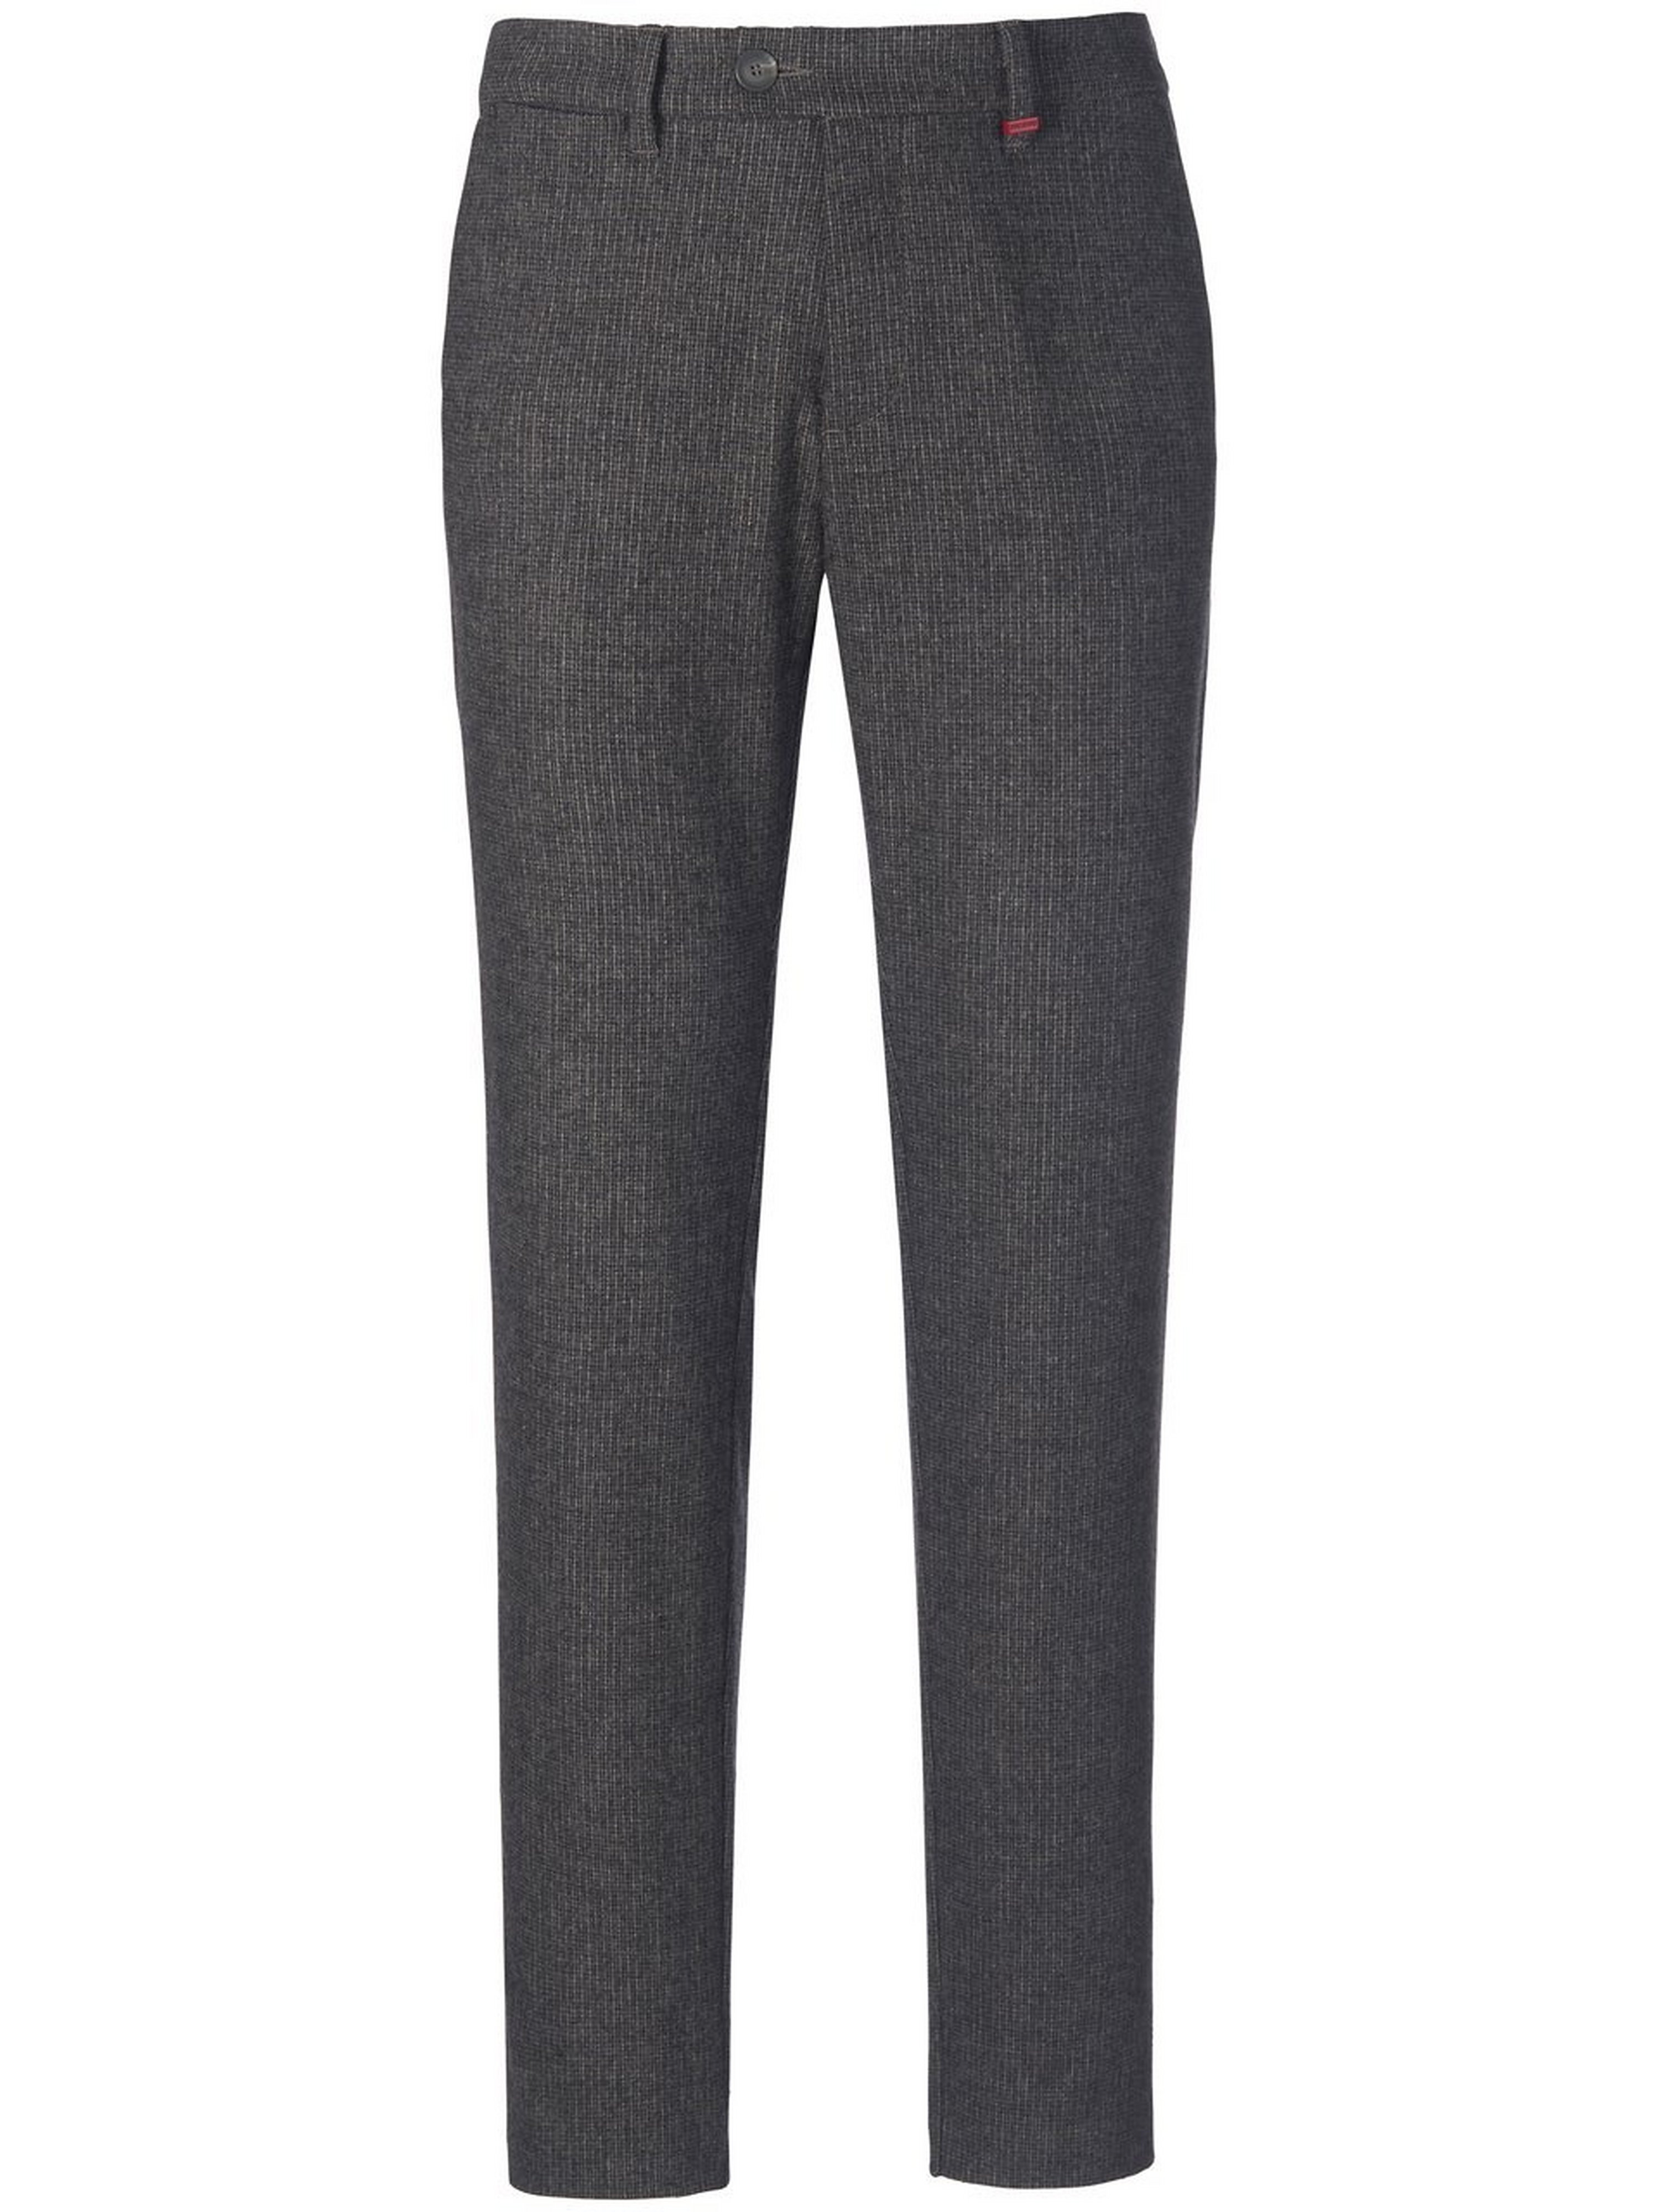 Le pantalon modèle Lennox  Mac gris taille 33